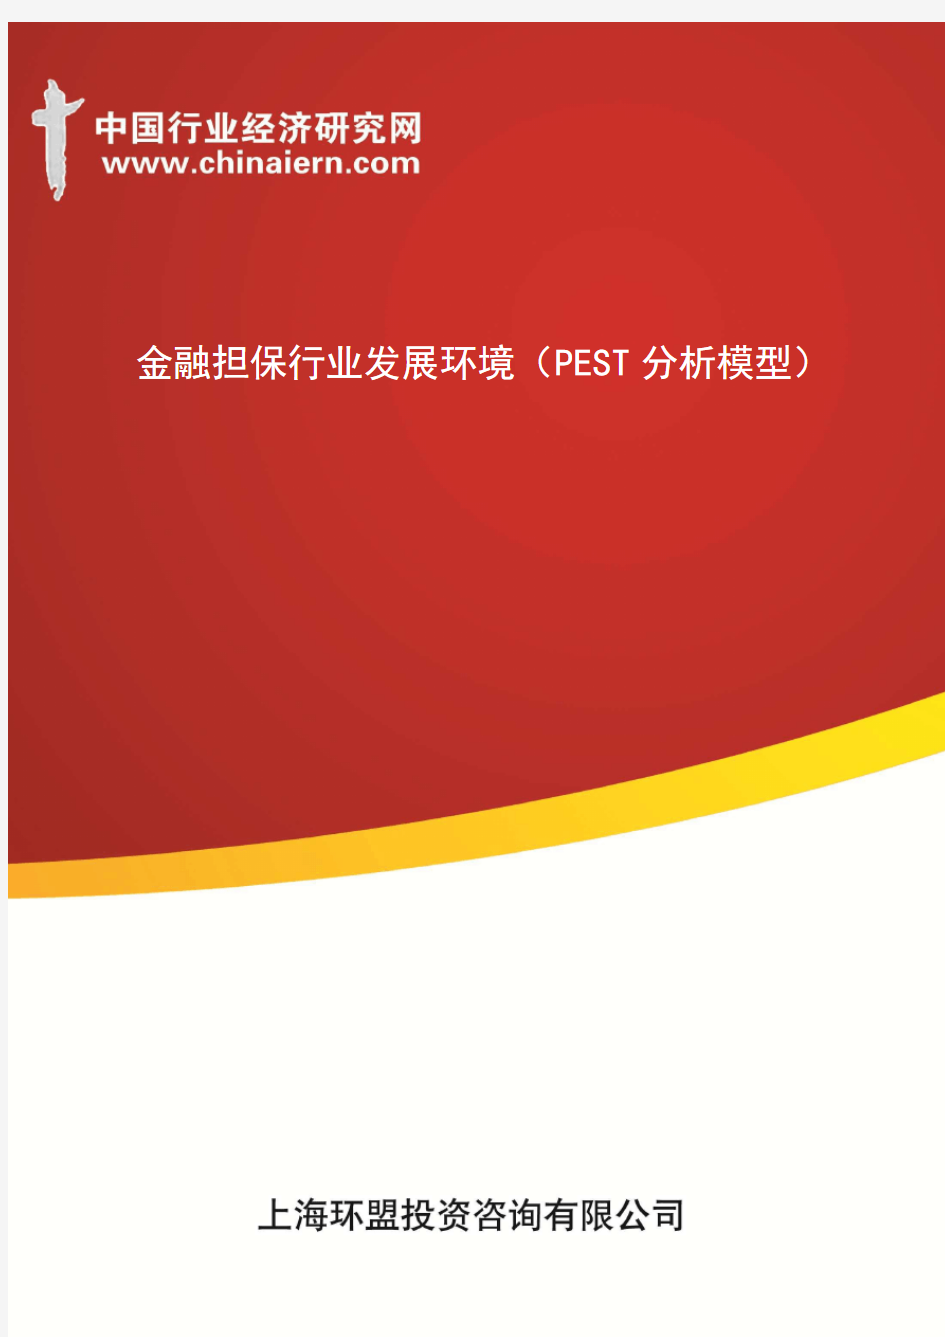 金融担保行业发展环境(PEST分析模型)(上海环盟)